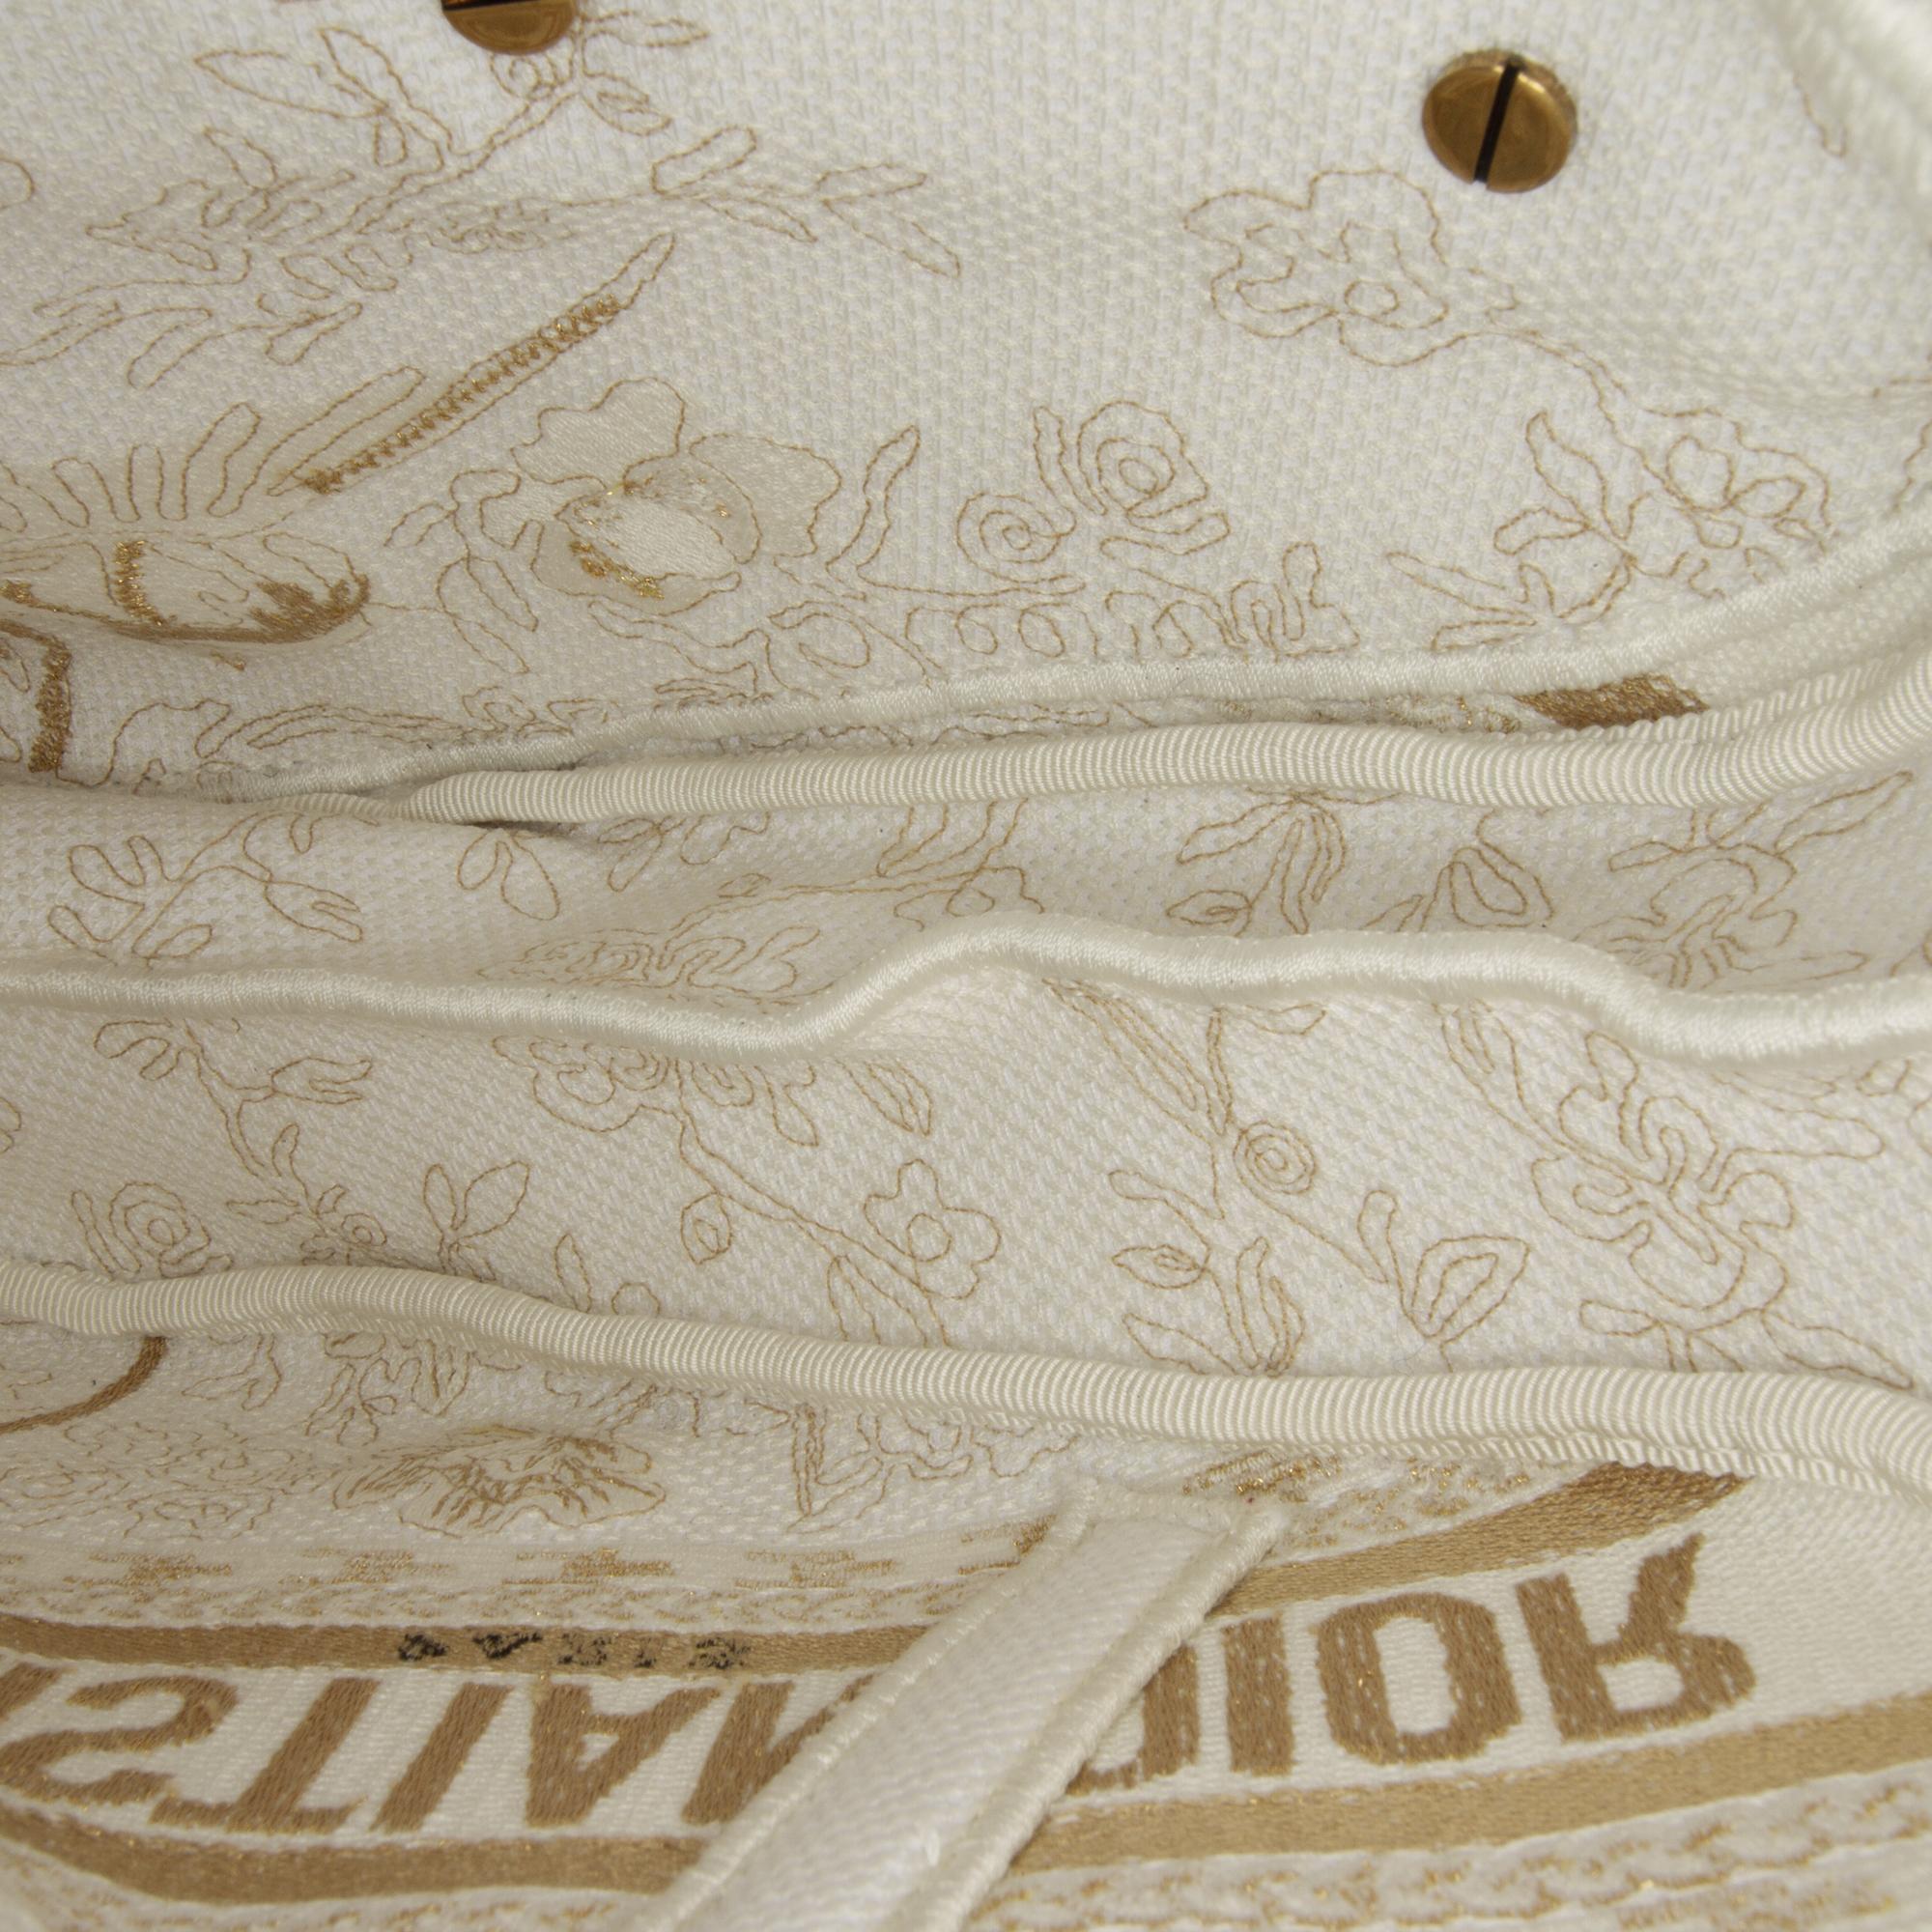 Dior White Toile De Jouy Saddle Bag